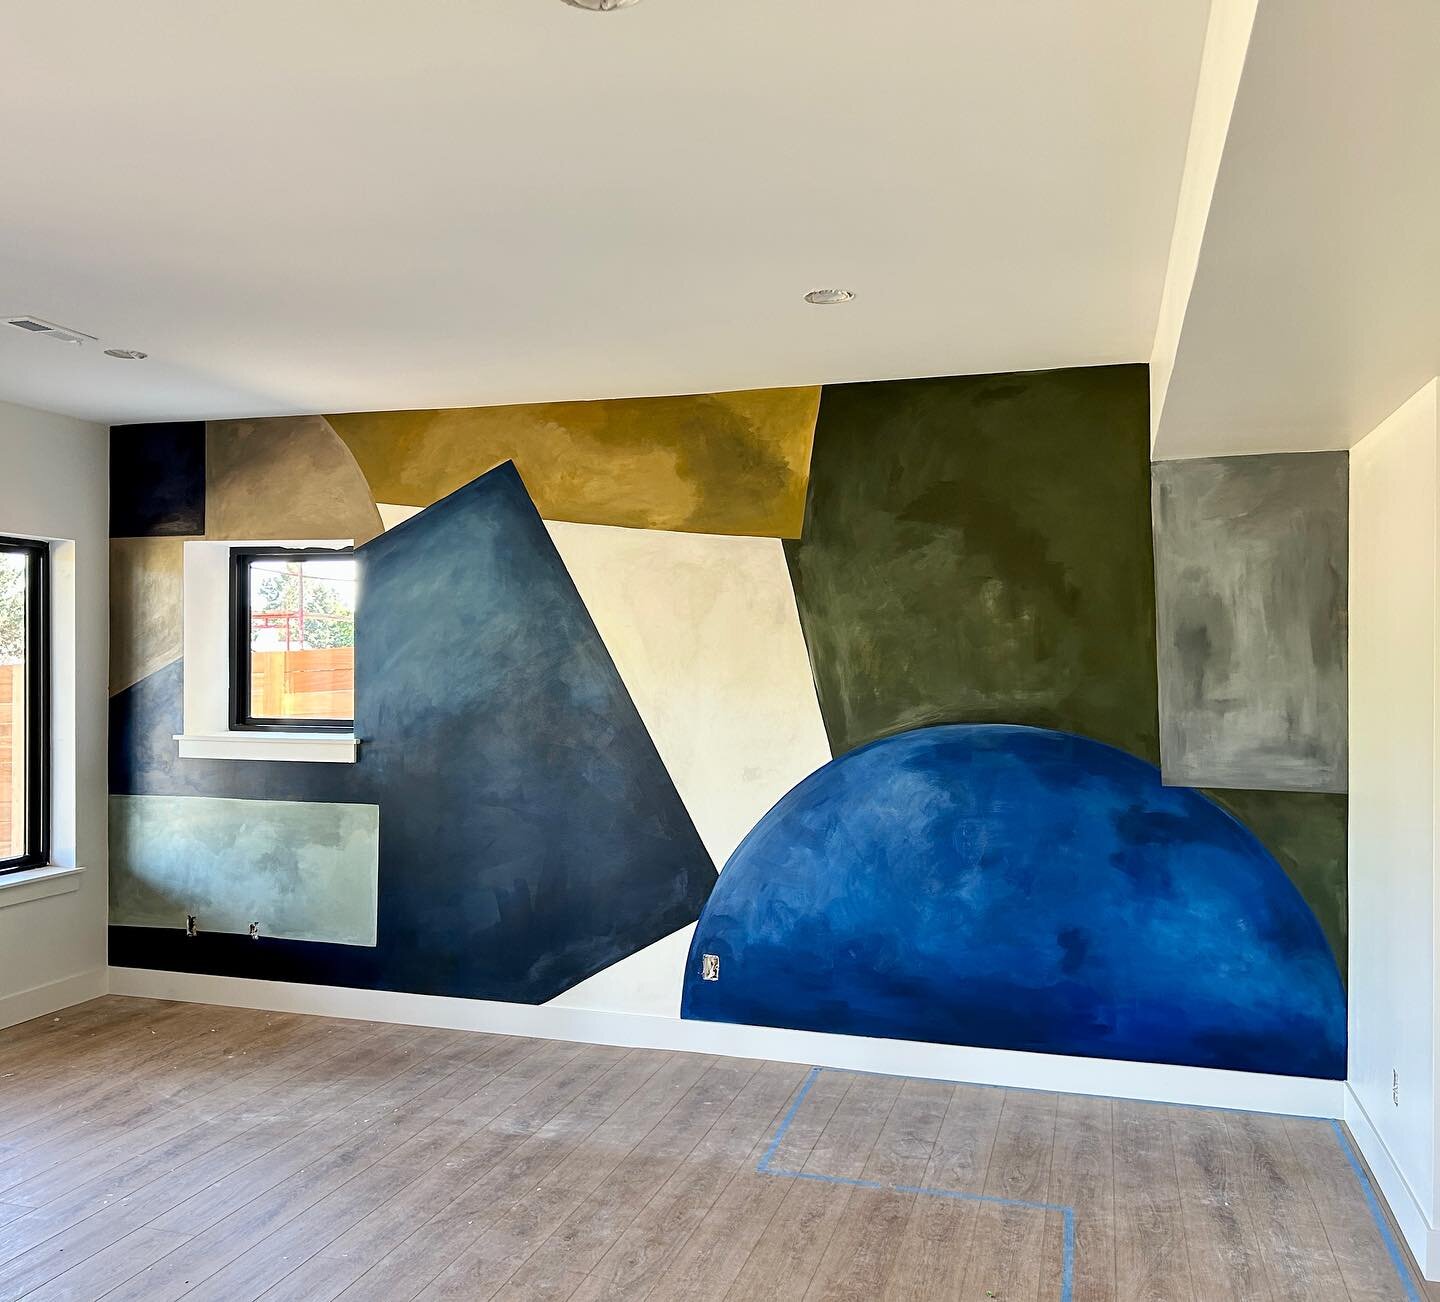 3/3 Murals - A basement ready for entertaining 💃